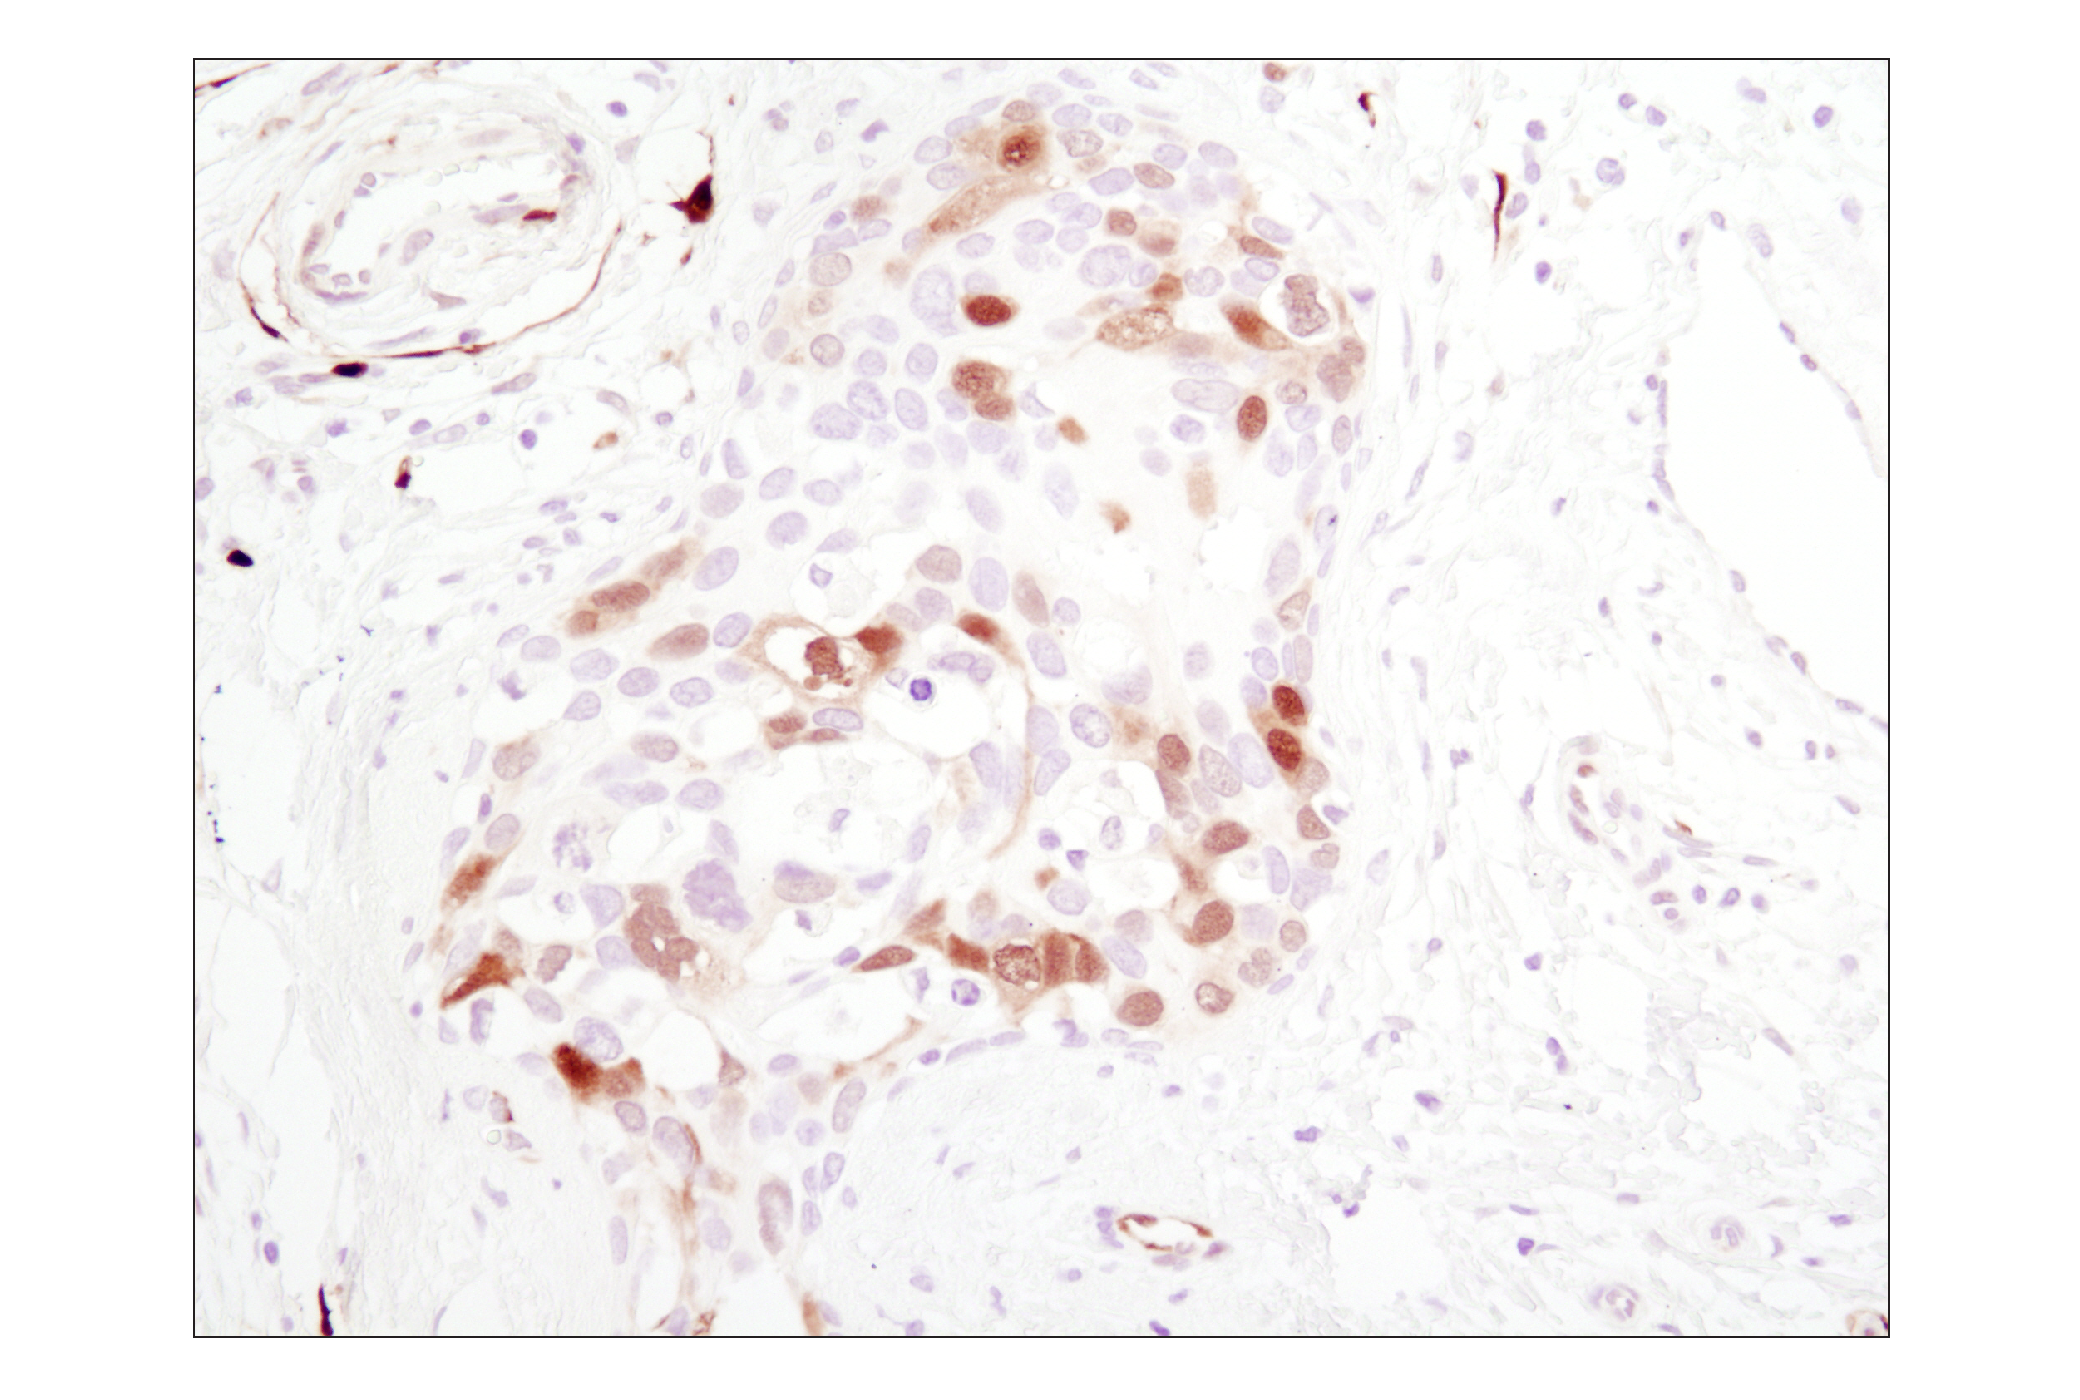  Image 10: PhosphoPlus® p44/42 MAPK (Erk1/2) (Thr202/Tyr204) Antibody Kit